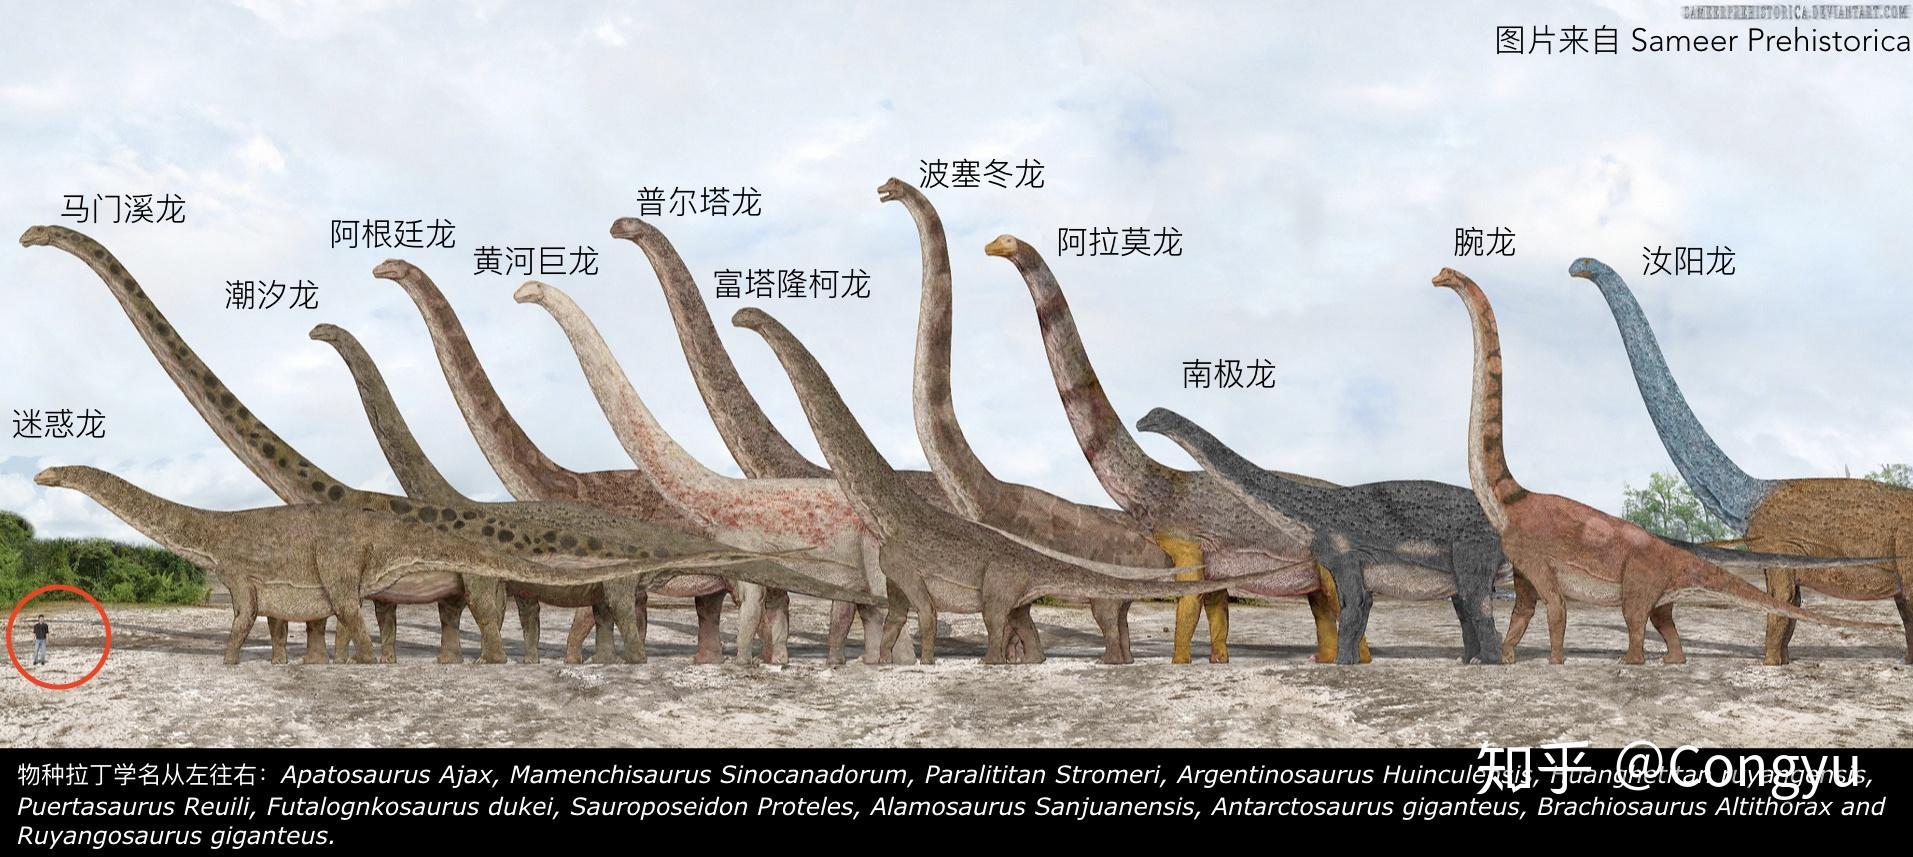 恐龙体型对比图片